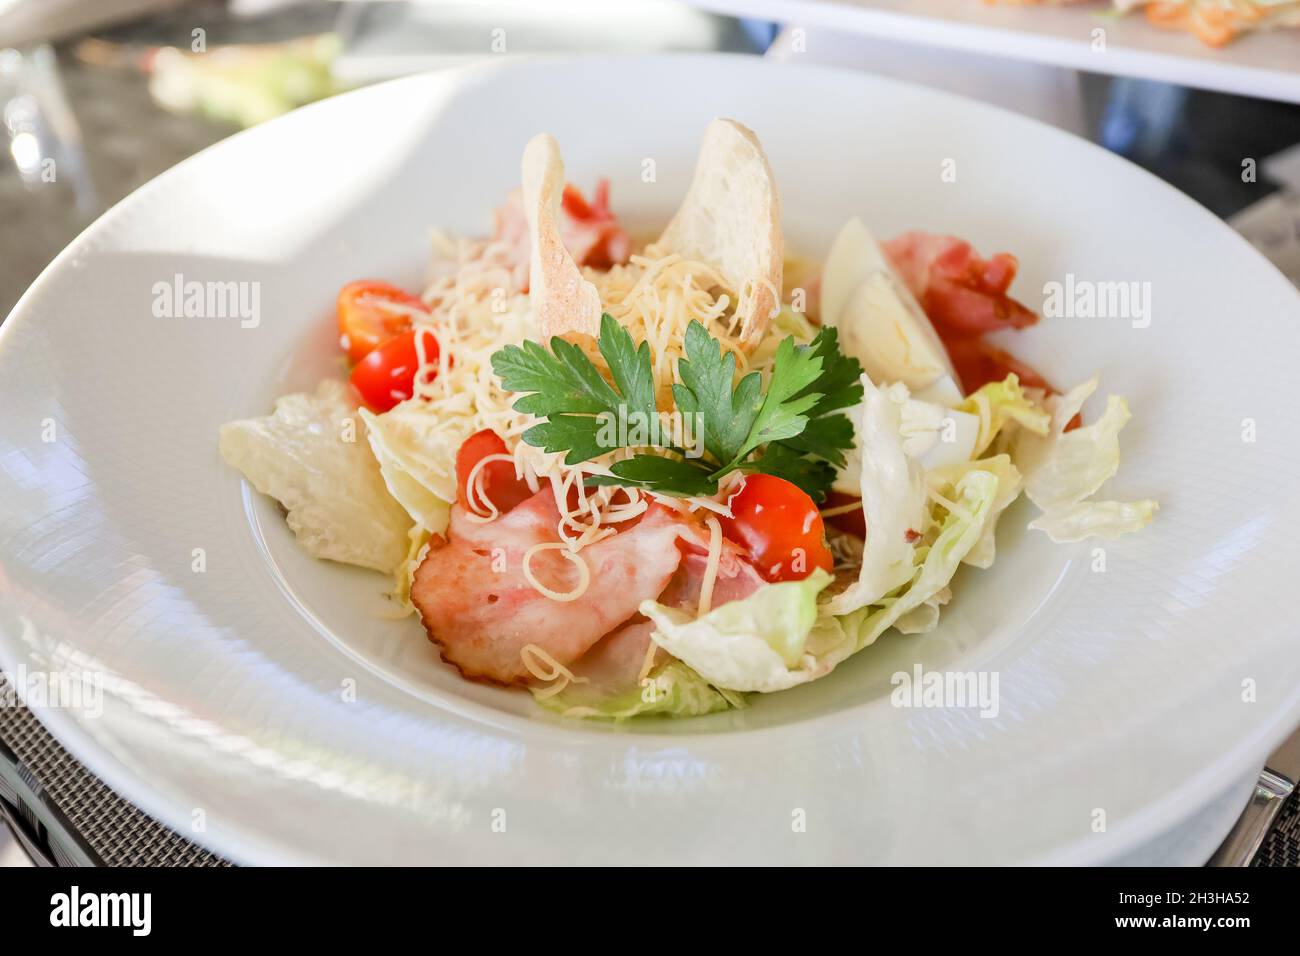 Œufs, croûtons, tomates, salade de jambon dans une assiette blanche sur une table.Photo de haute qualité Banque D'Images